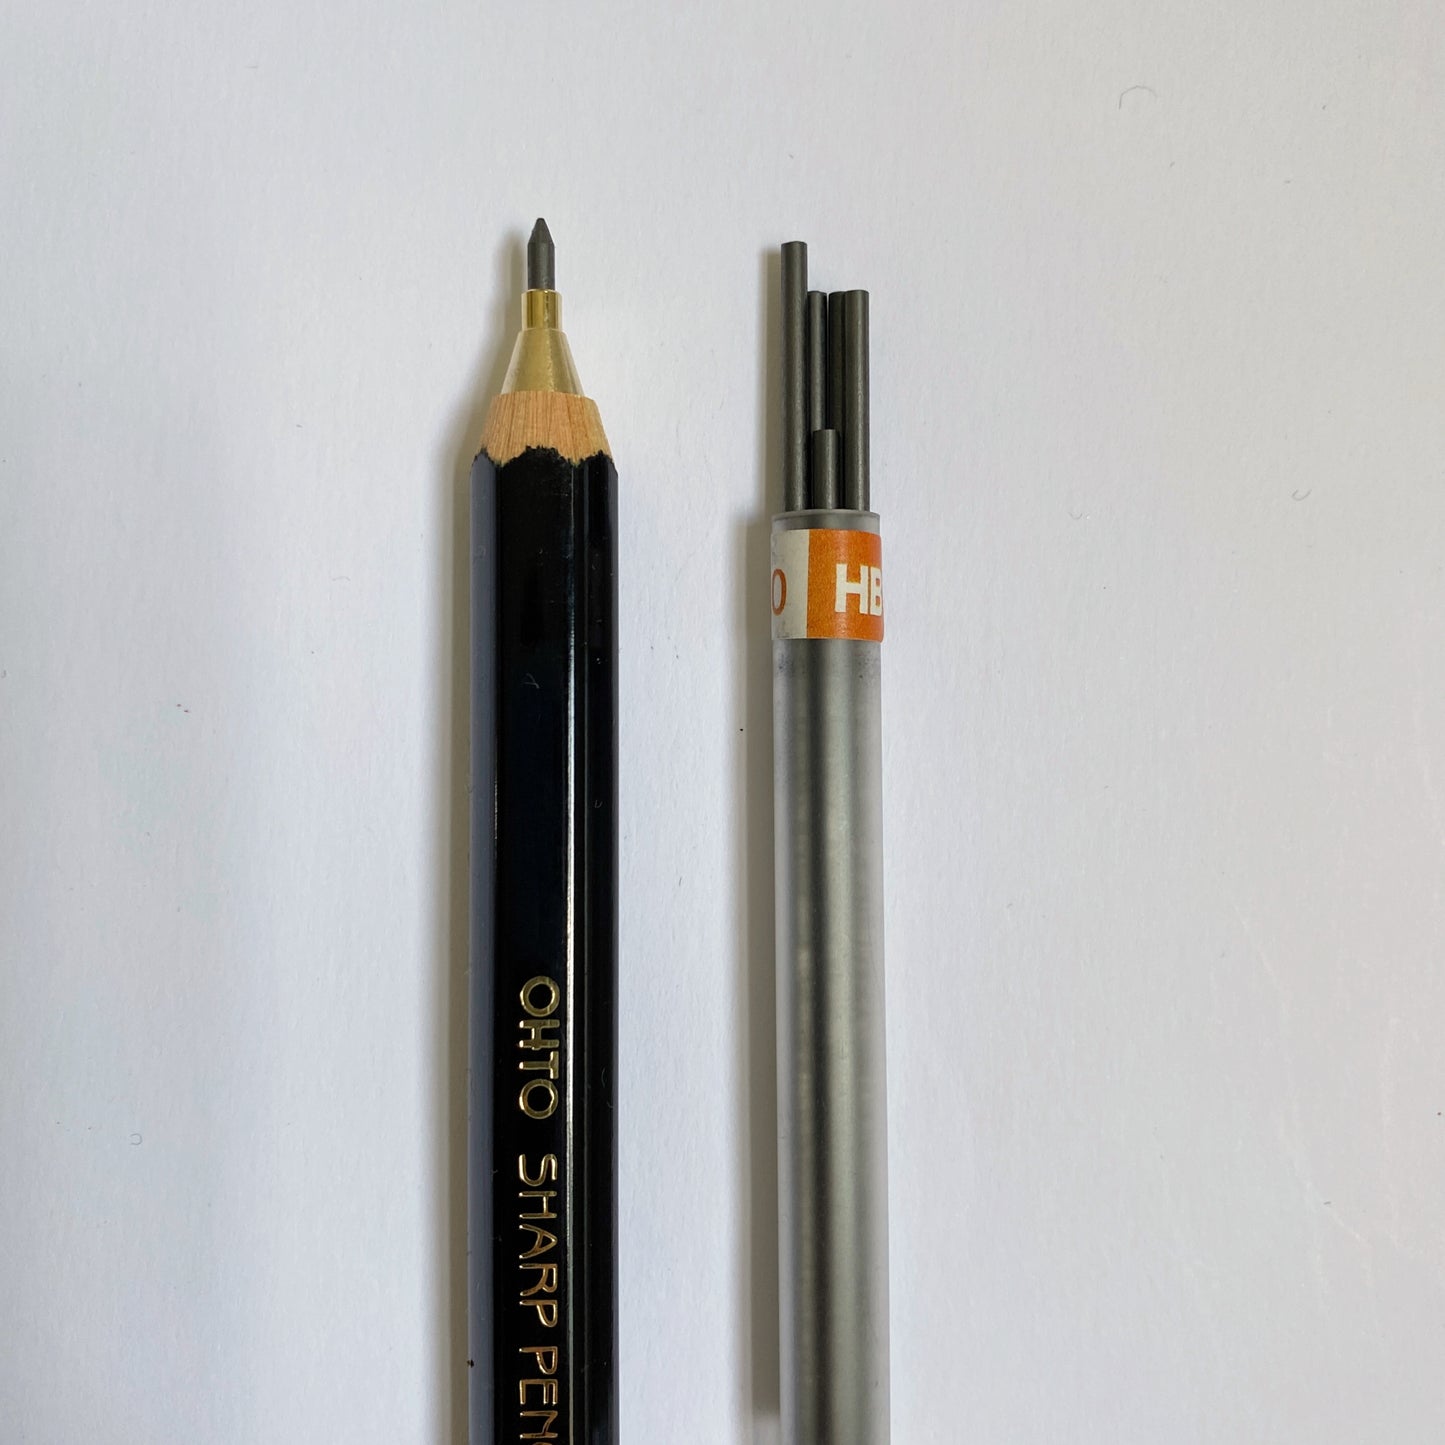 ohto : pencil lead refill 2mm hb